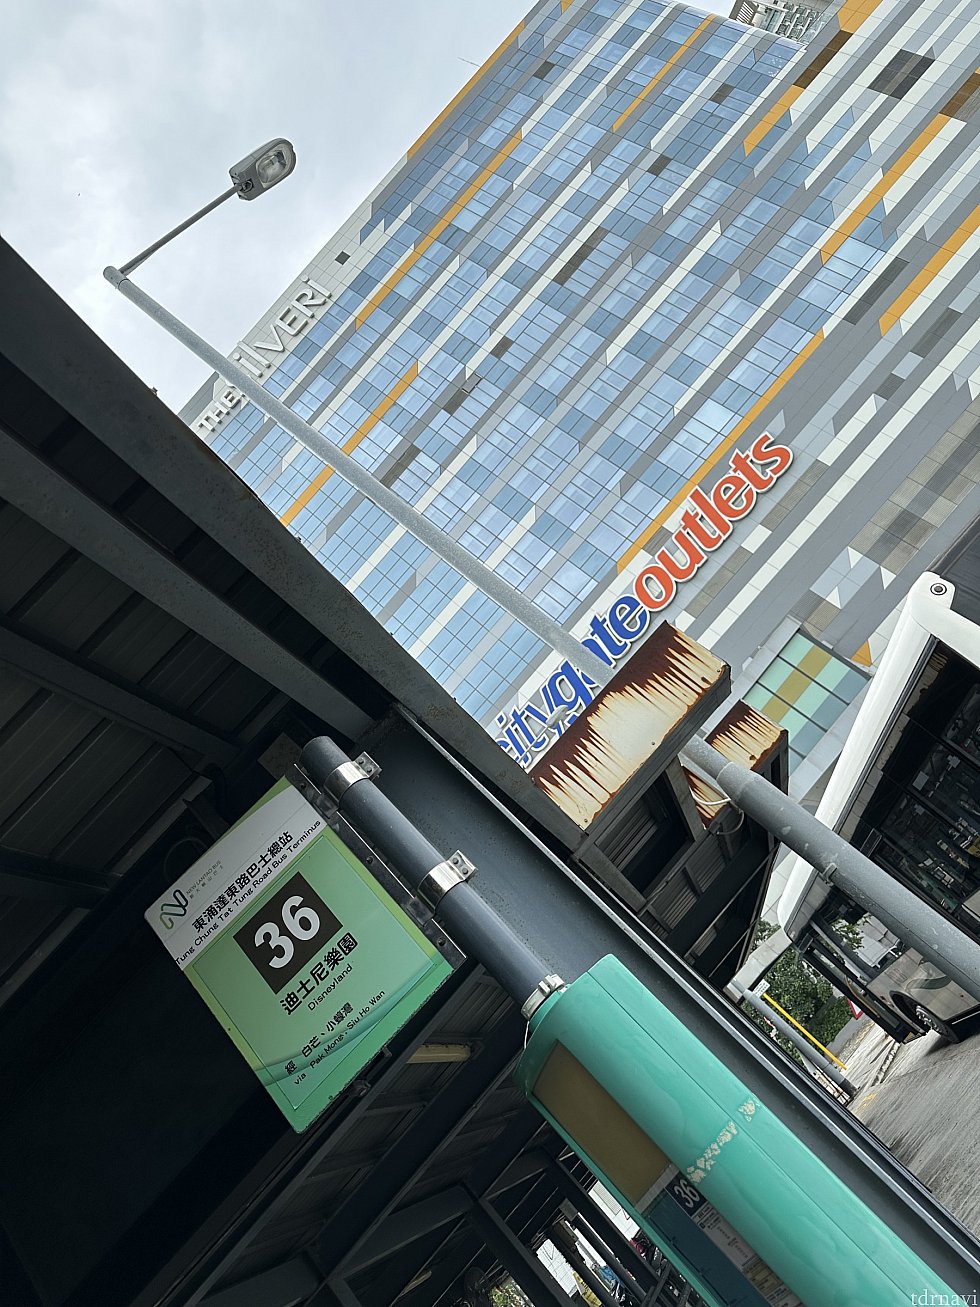 36番乗り場はS1バスの乗り場の建物を東涌駅とは反対側に抜けたところにあります。